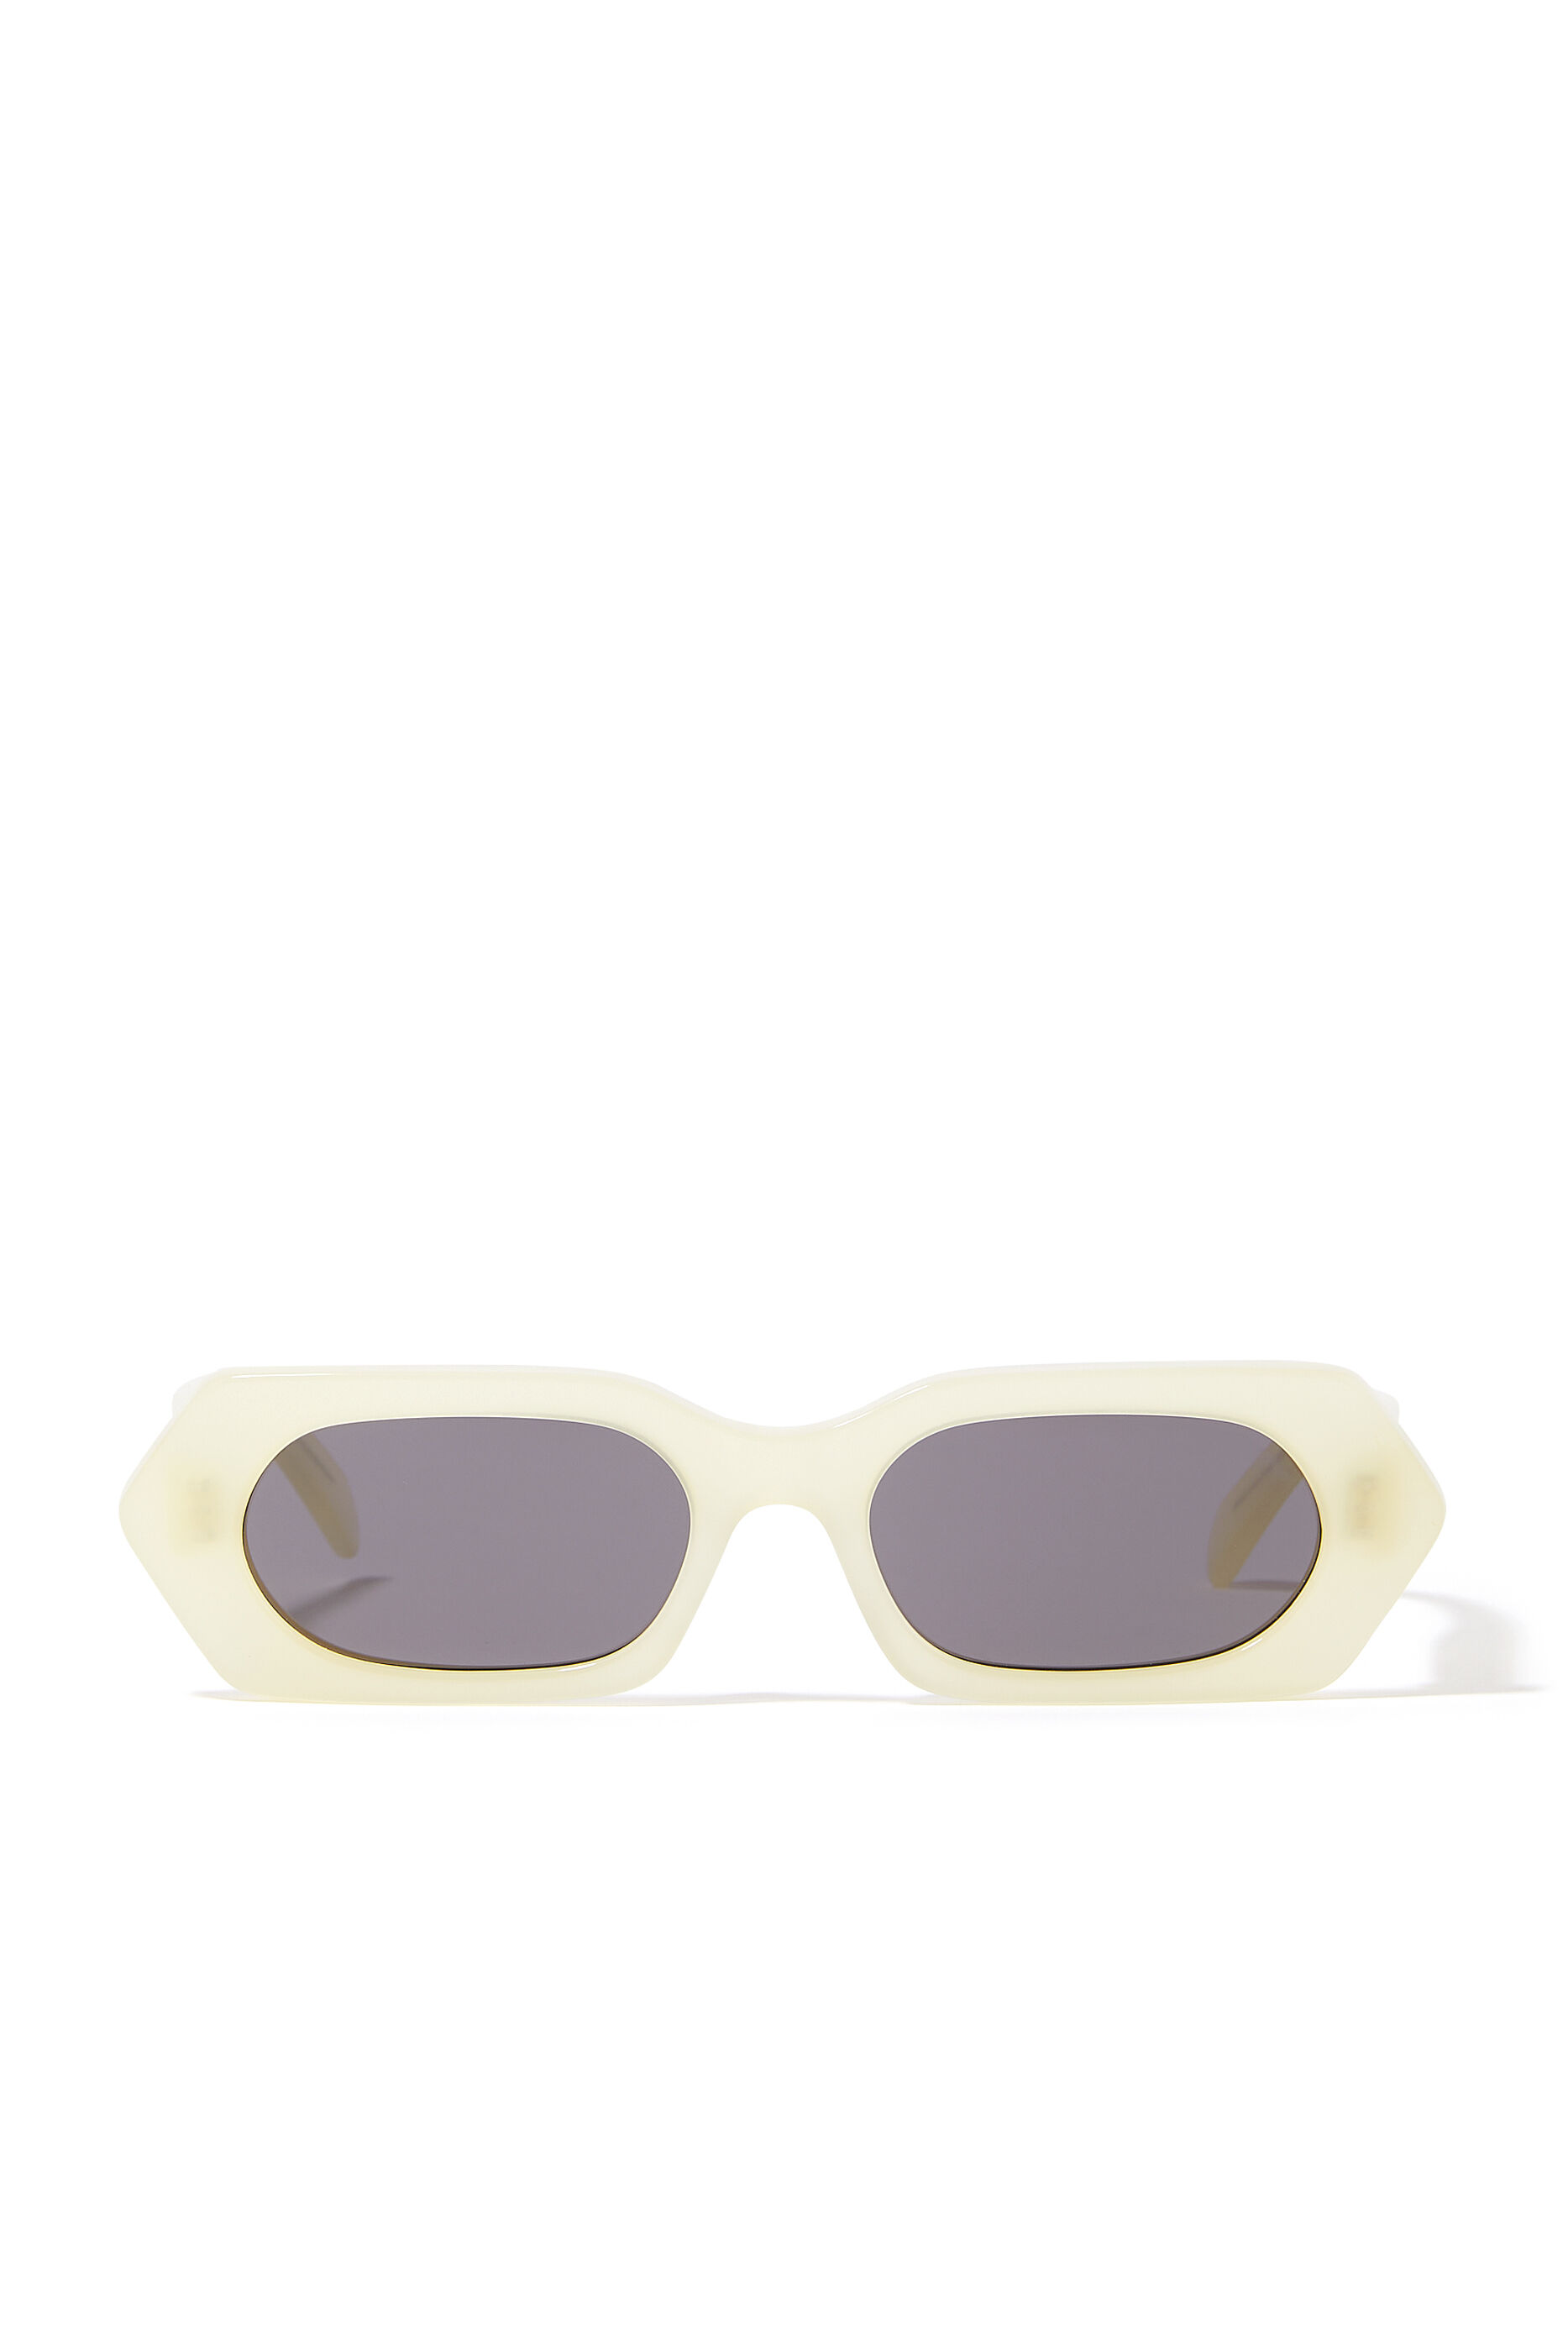 Buy Celine Bold 3 Dot Rectangular Sunglasses for Womens